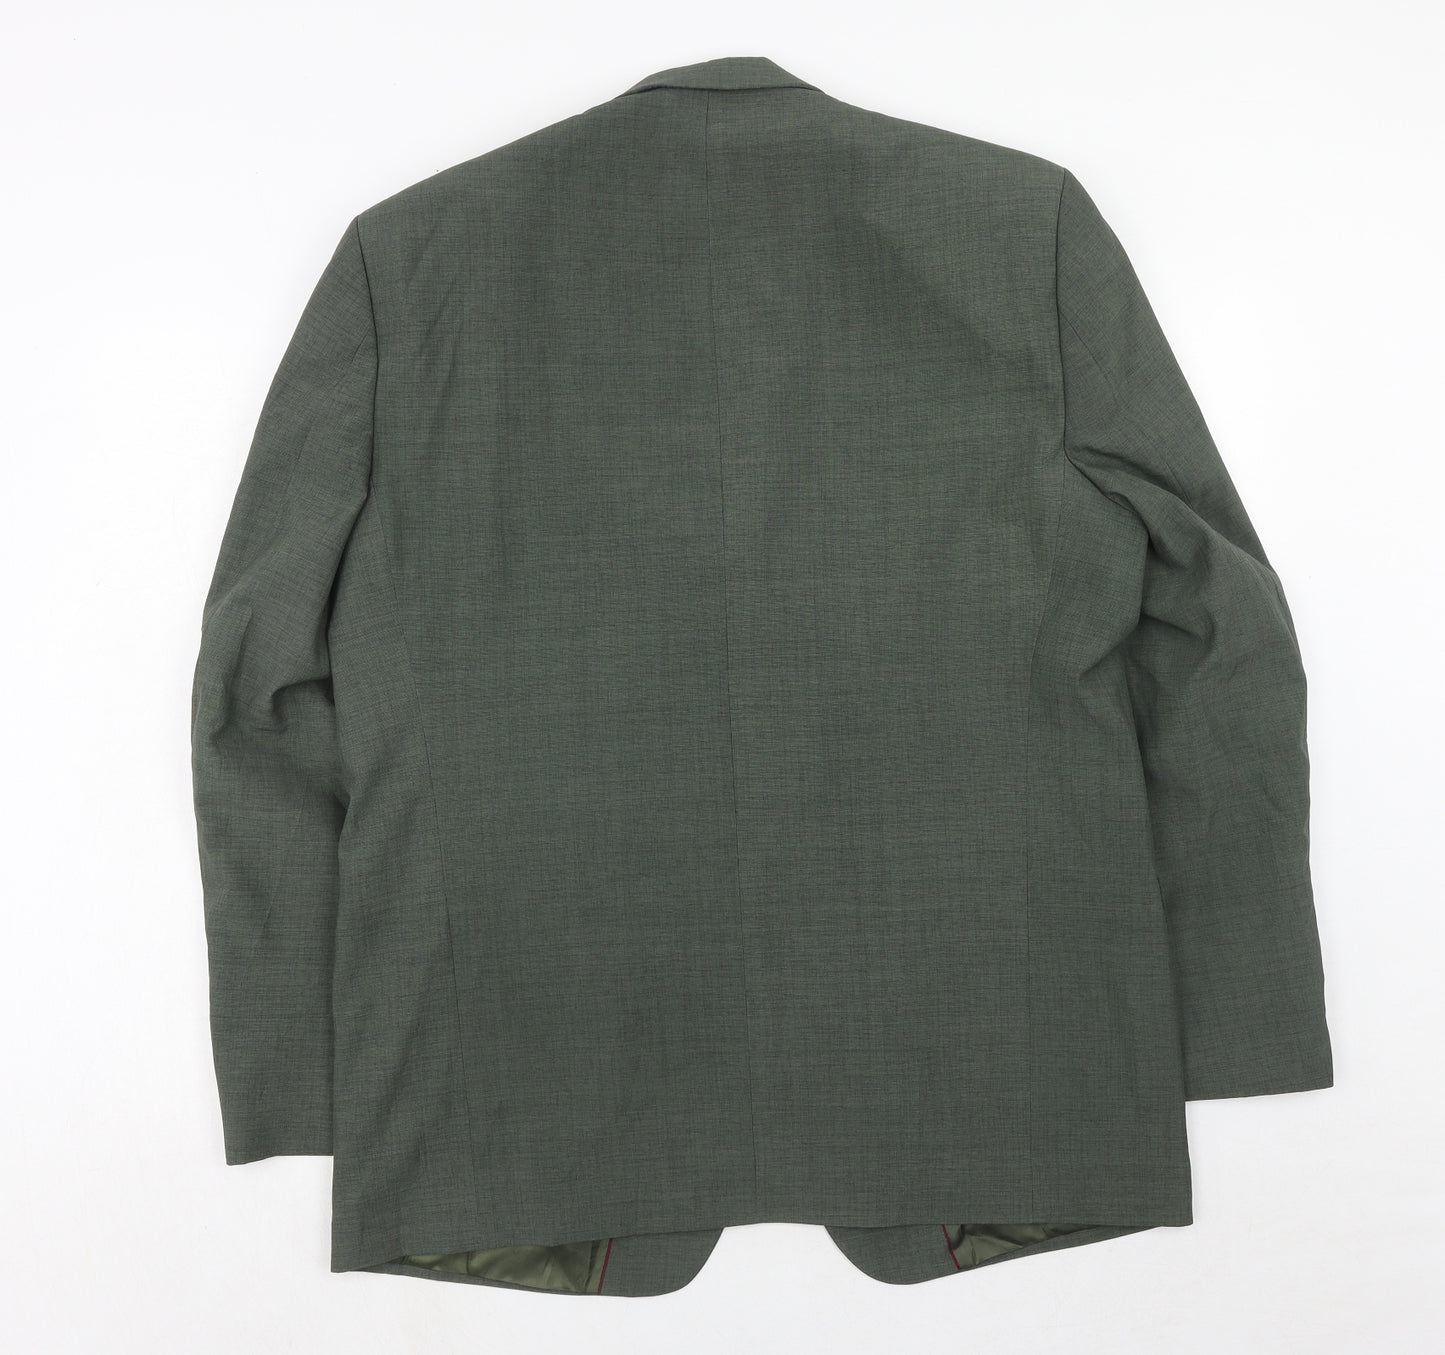 Makrom Mens Green Polyester Jacket Suit Jacket Size 42 Regular